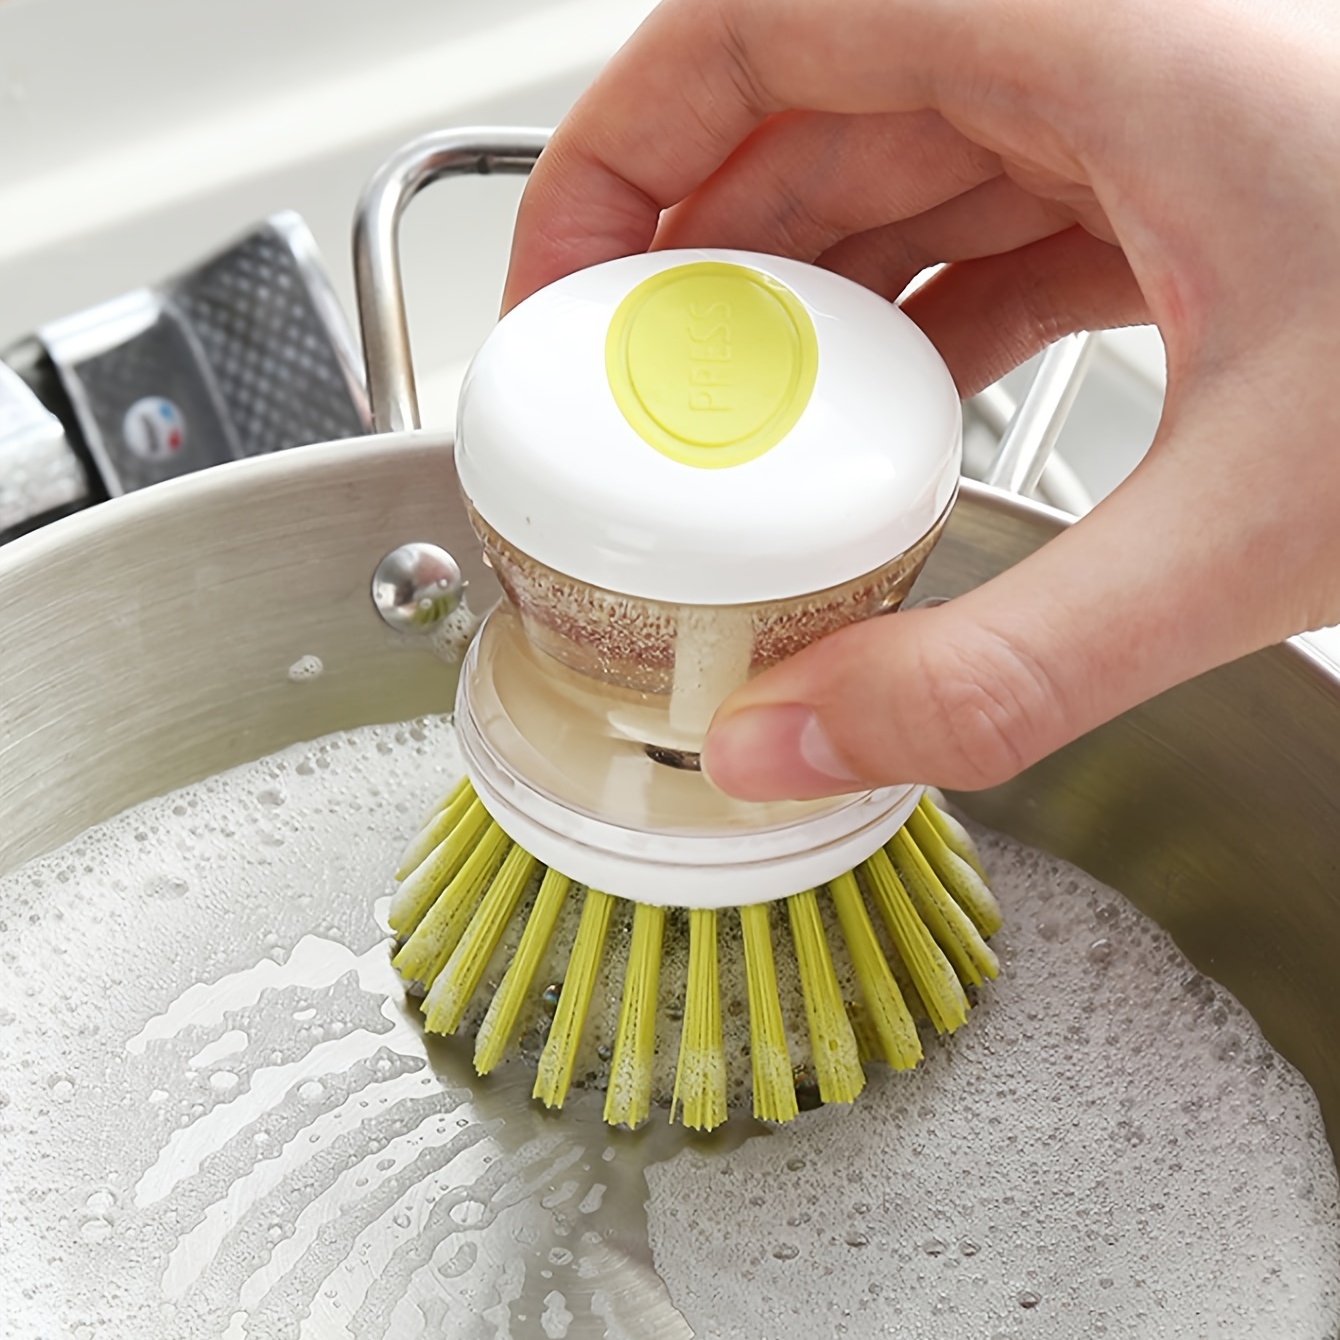 Scrub Brush Soap Dispenser Scrubber Dish Washing Kitchen Kitchen